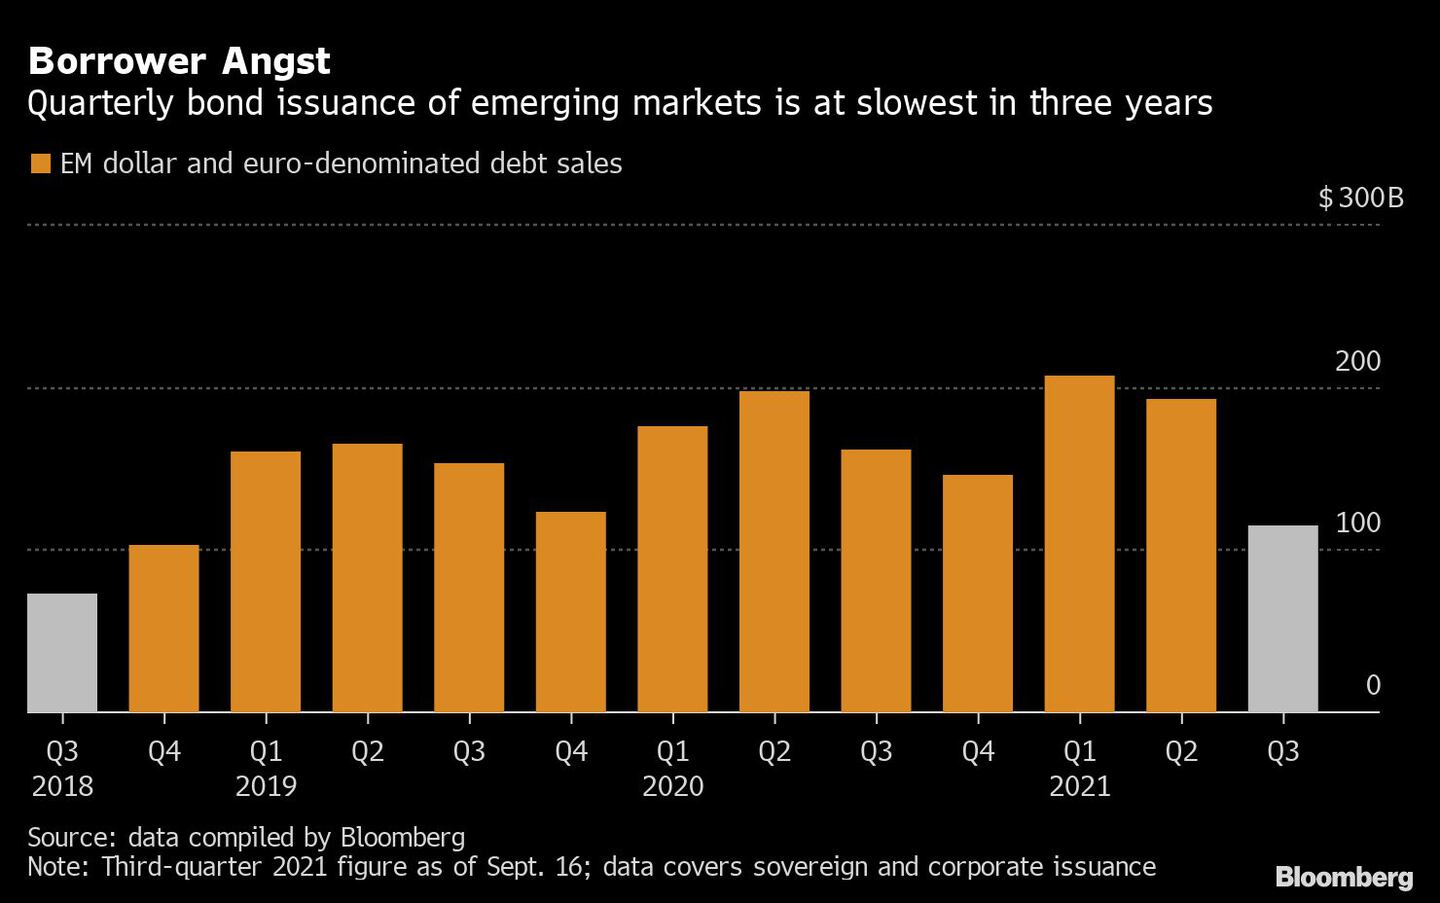 Emissão trimestral de títulos dos mercados emergentes está no menor nível em três anos